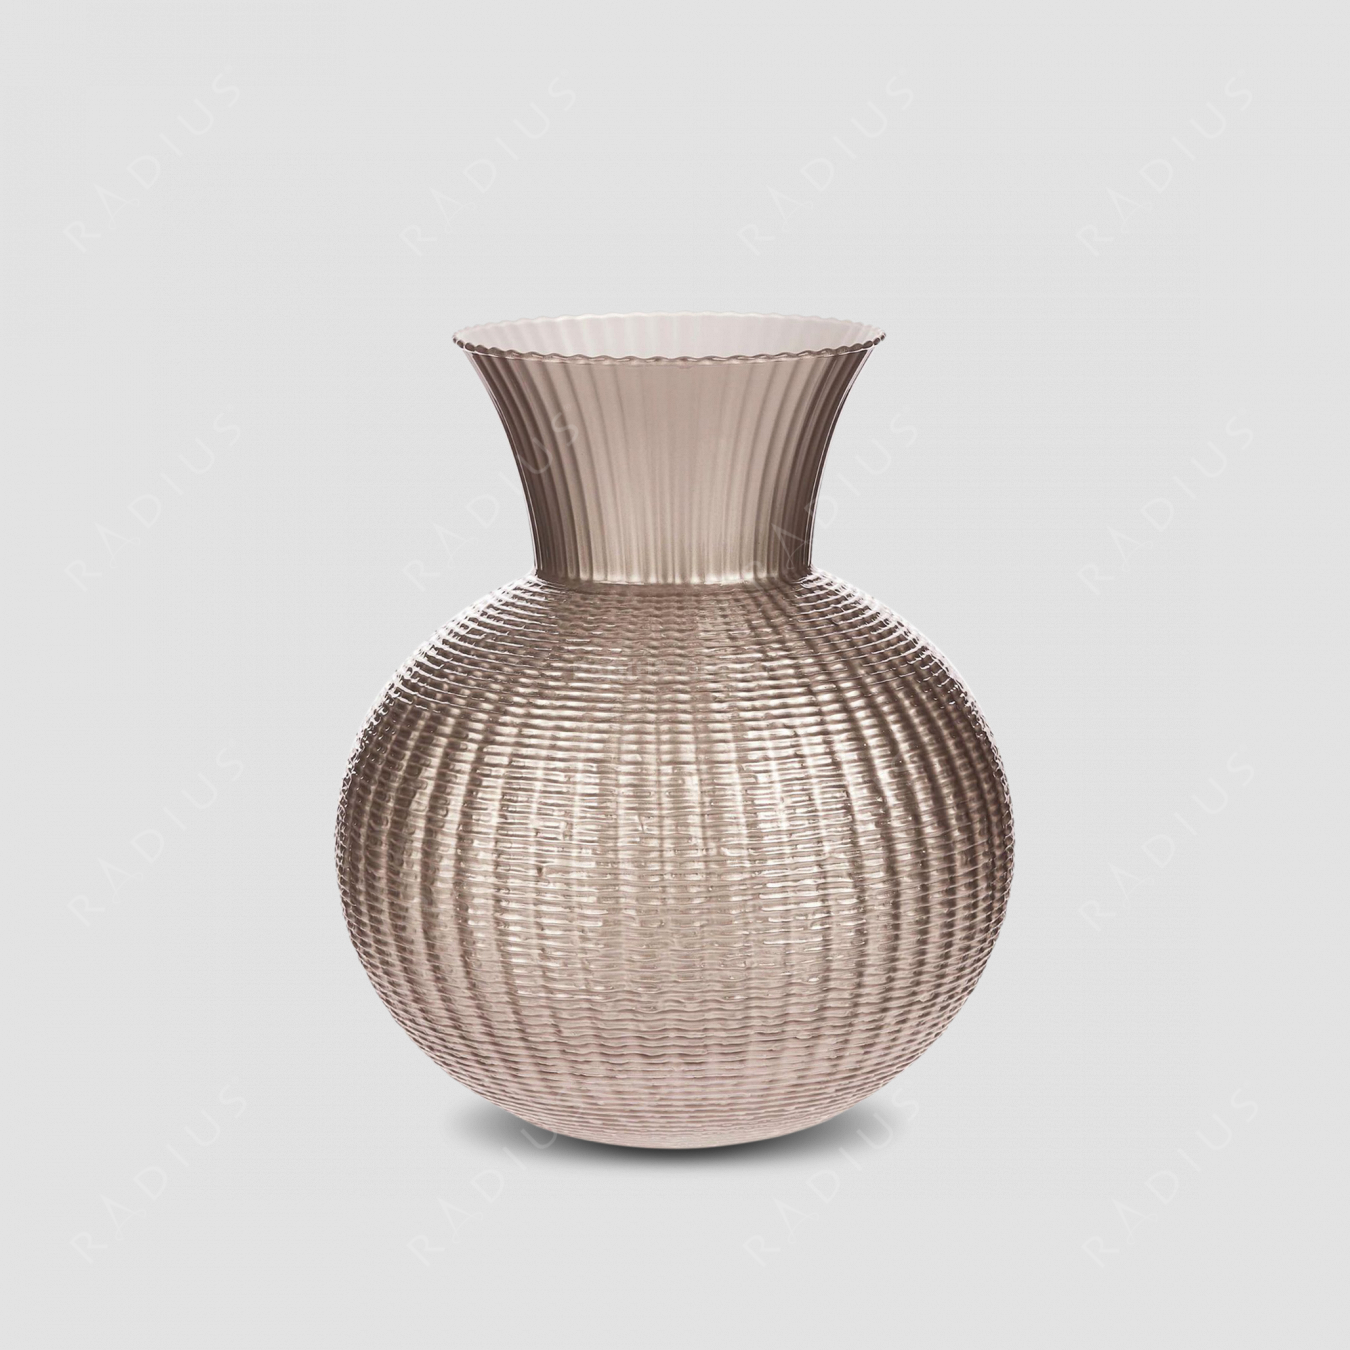 Стеклянная ваза для цветов, диаметр: 25 см, высота: 30 см, материал: стекло, цвет: коричнево-медовый, внутри прозрачный белый, серия Ophelia, IVV (Italy), Италия